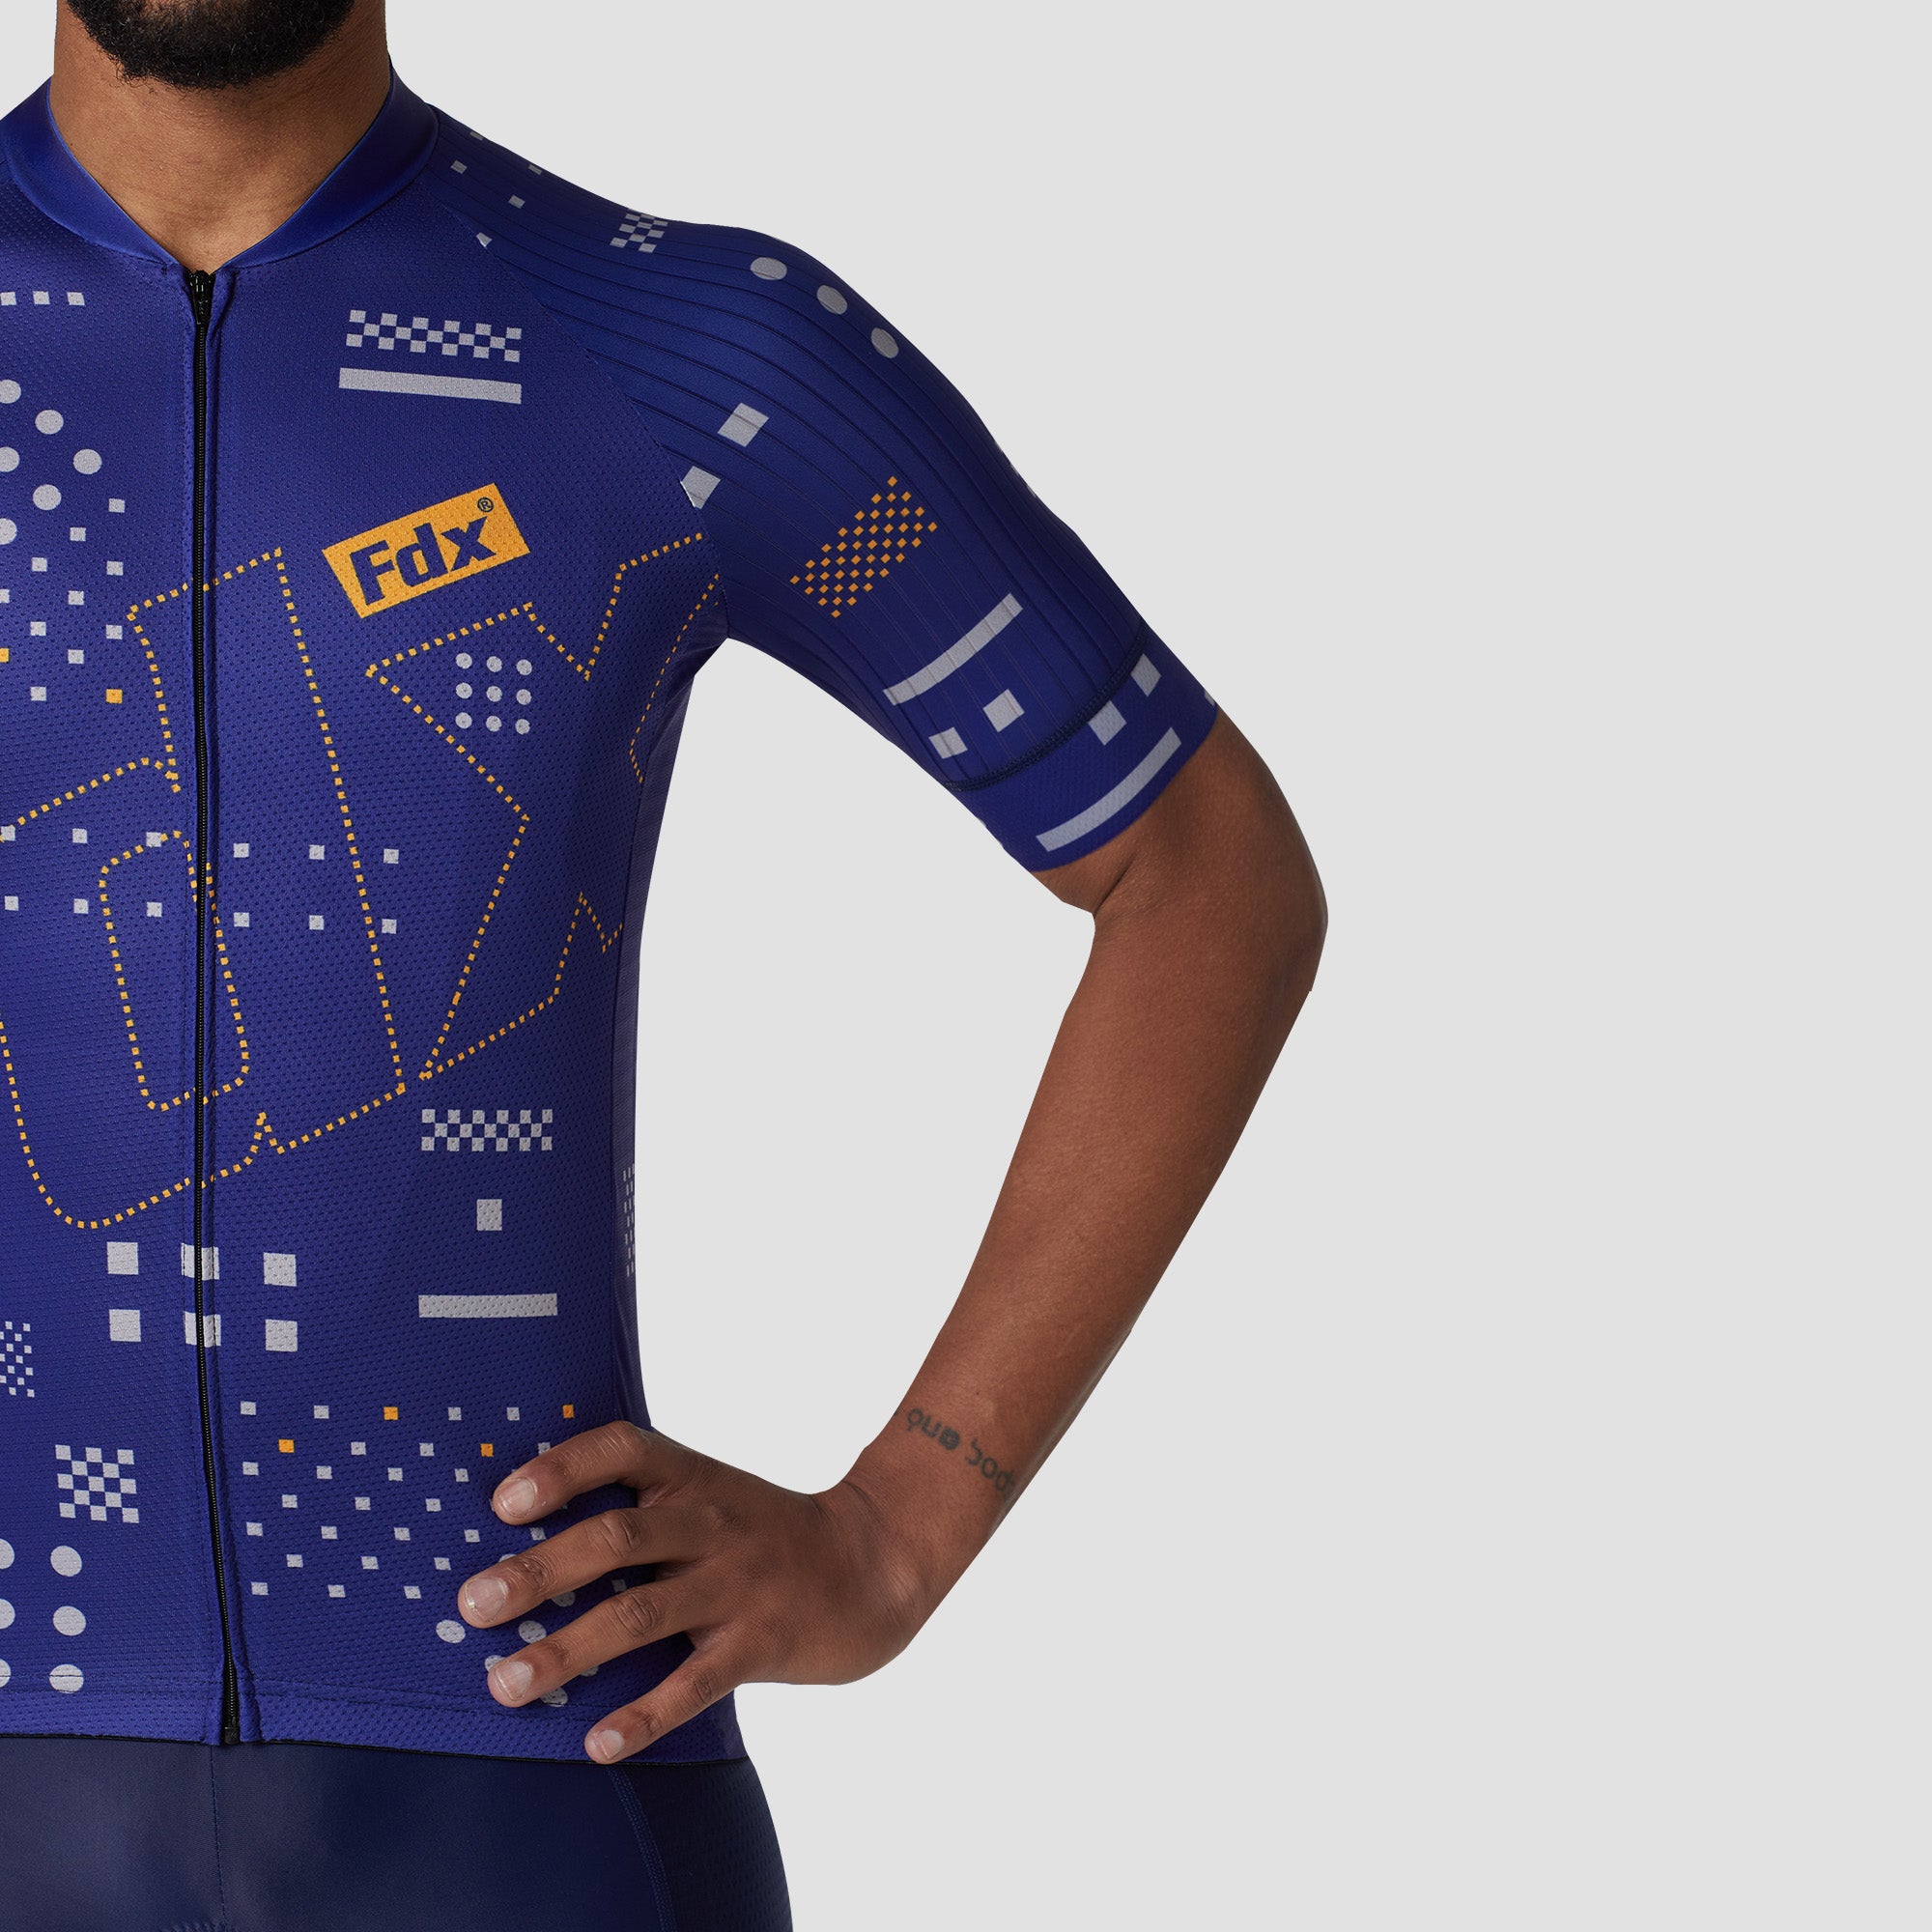 Fdx Mens Blue Short Sleeve Cycling Jersey for Summer Best Road Bike Wear Top Light Weight, Full Zipper, Pockets & Hi-viz Reflectors - All Day